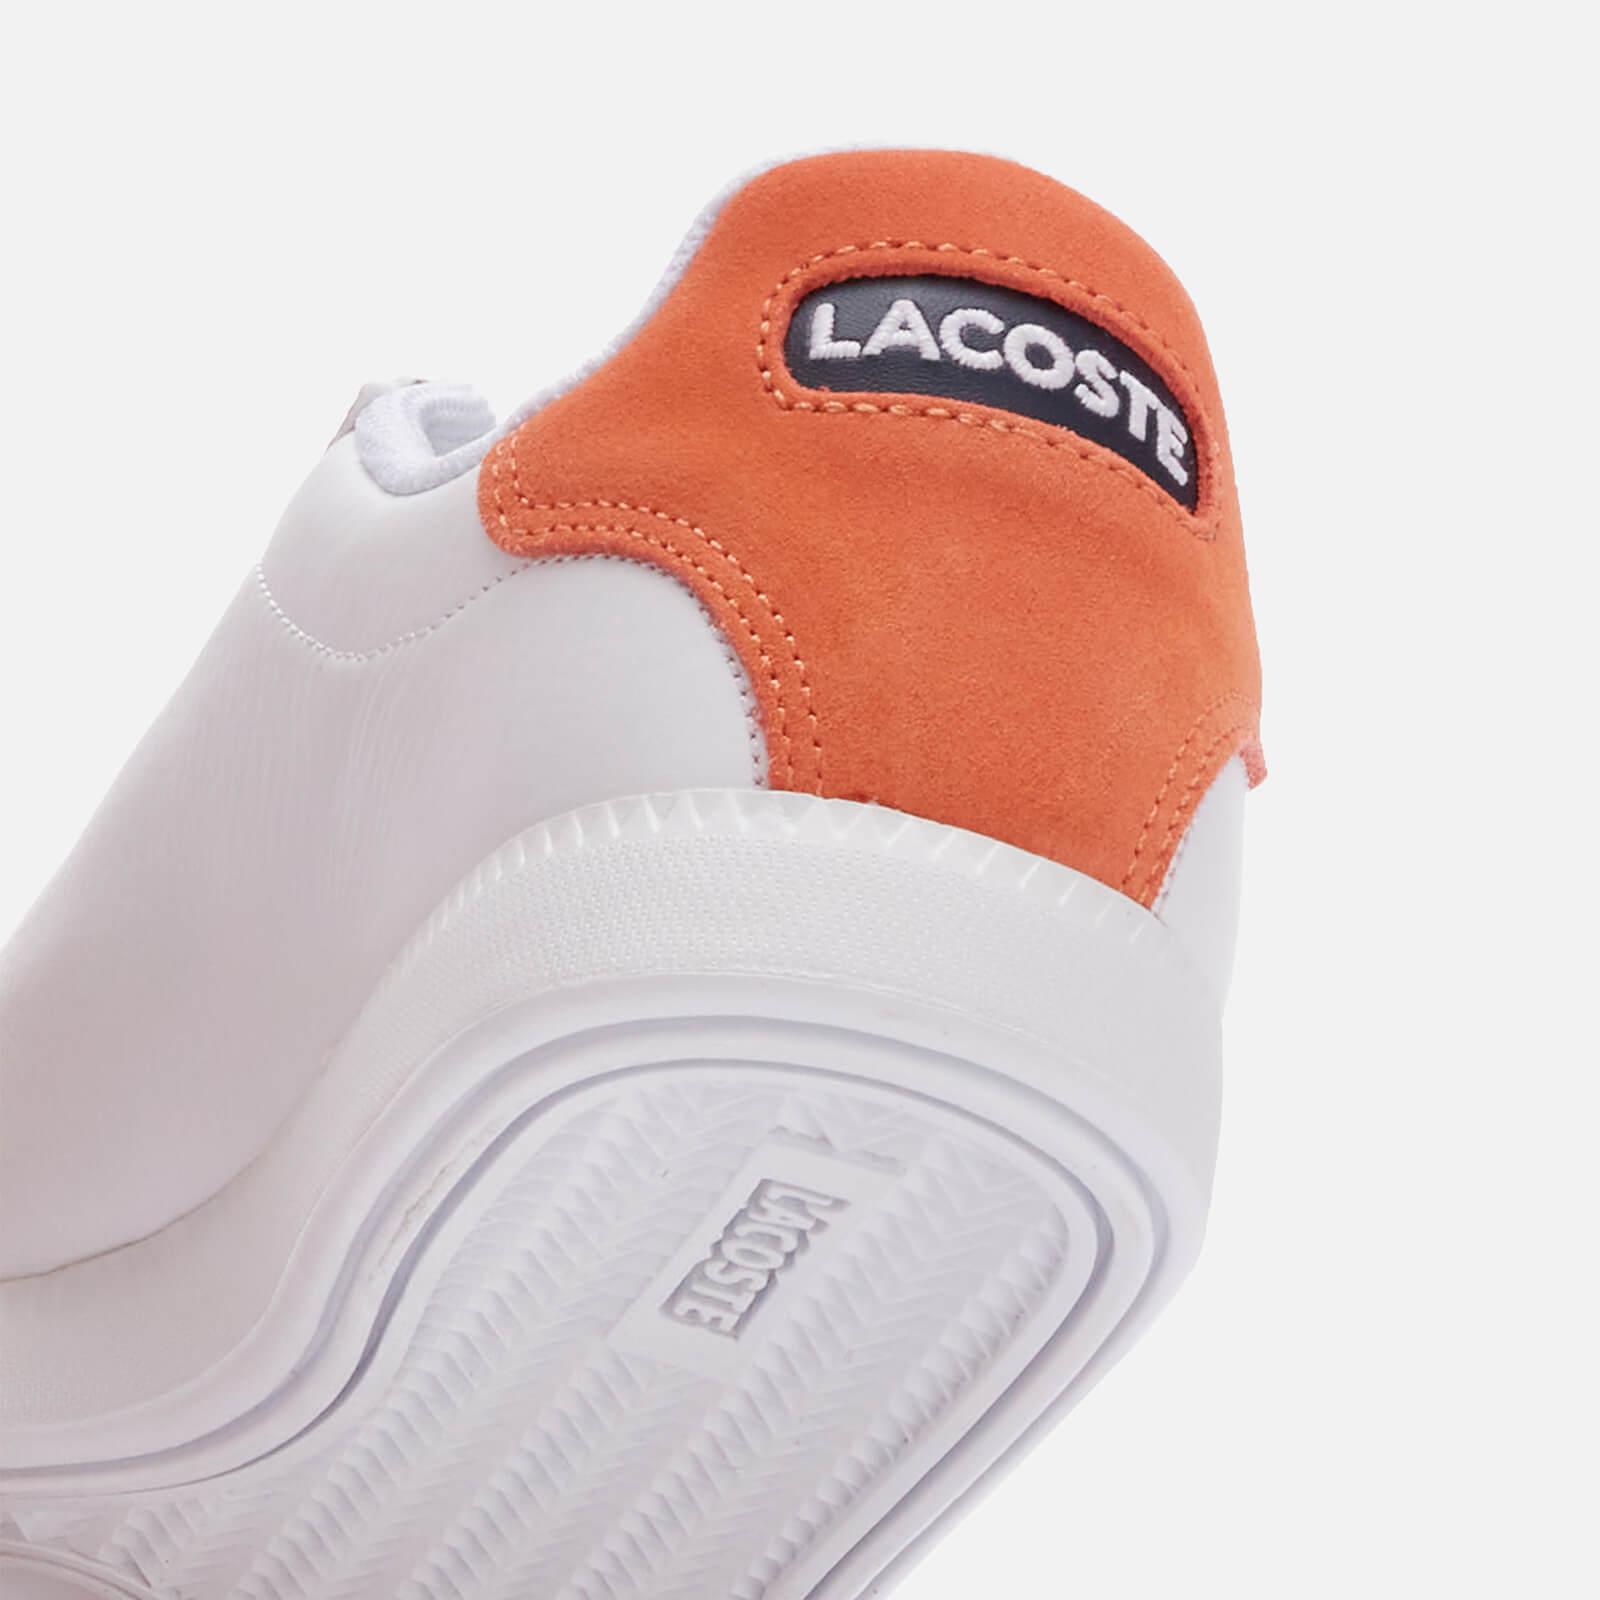 Lacoste Graduate 0320 2 Leather Trainers in White/Orange (White 